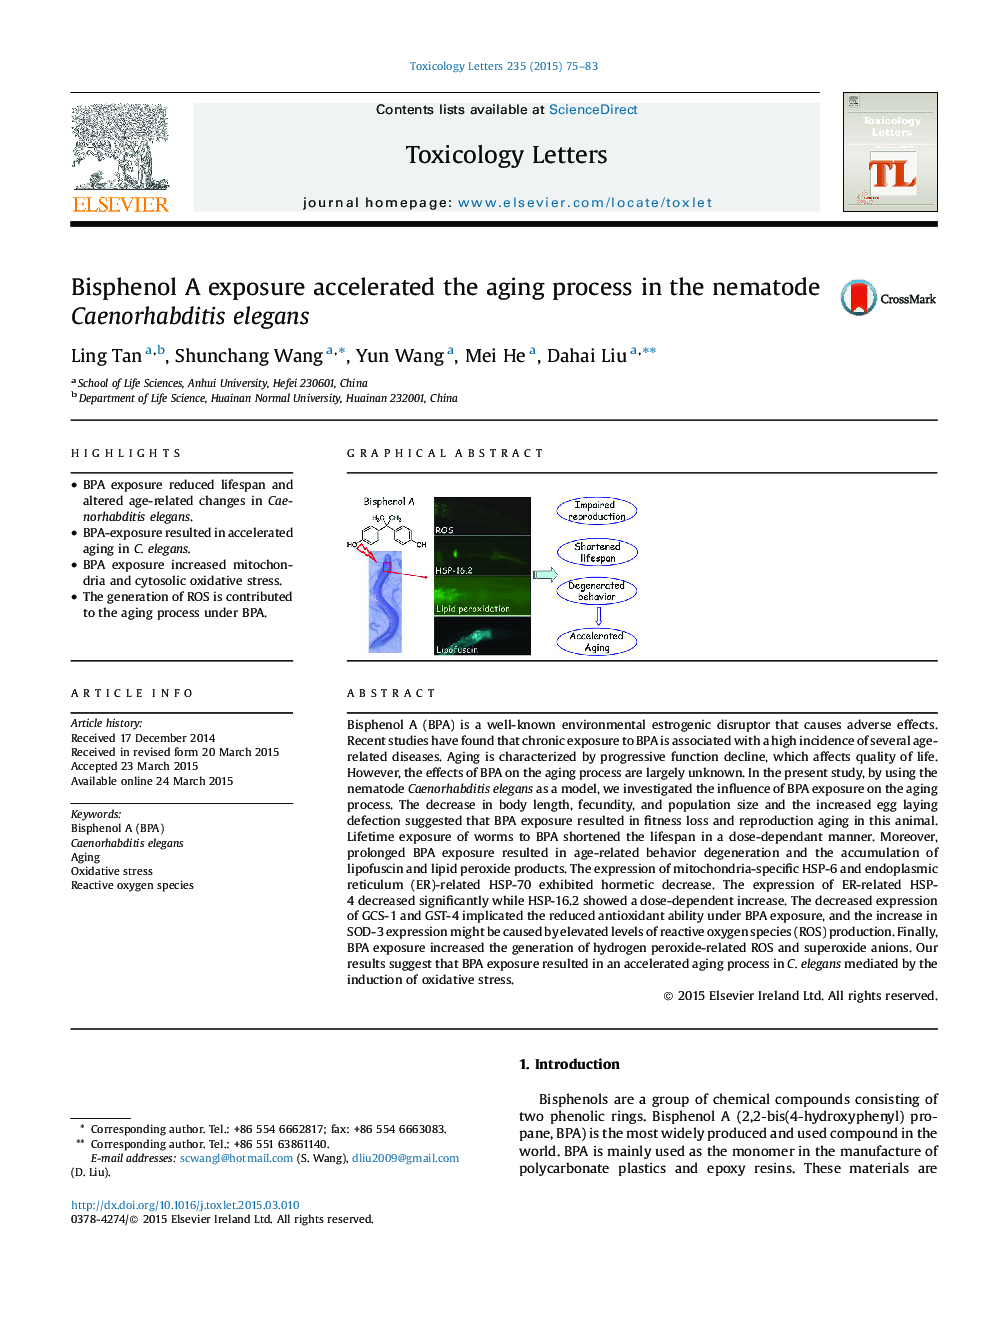 Bisphenol A exposure accelerated the aging process in the nematode Caenorhabditis elegans